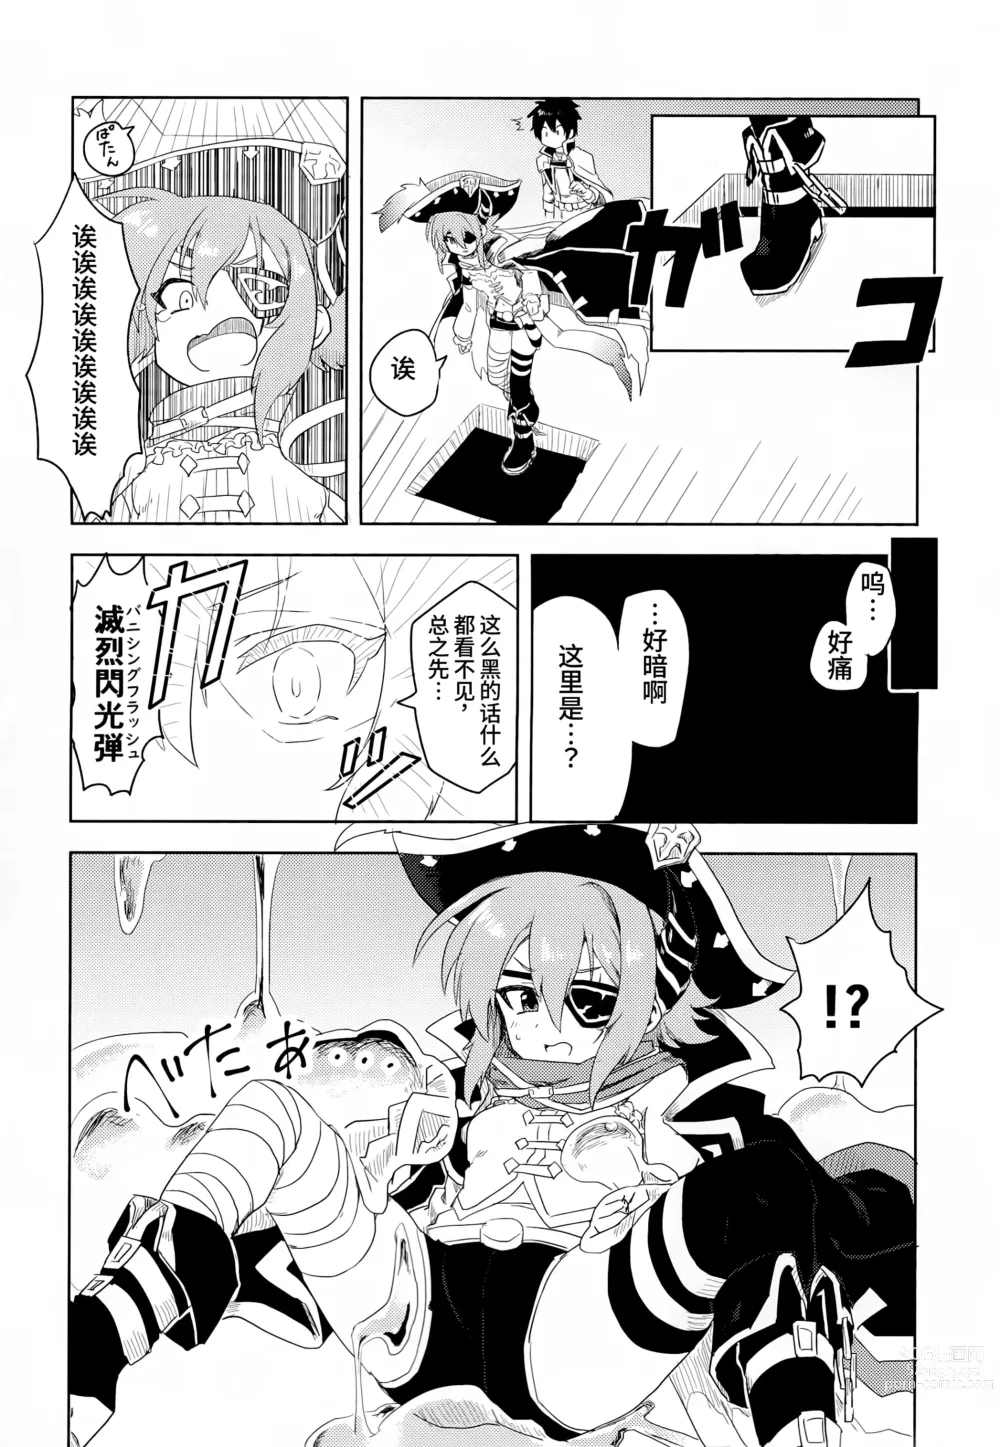 Page 4 of doujinshi 与杏奈一起色情陷阱迷宫冒险